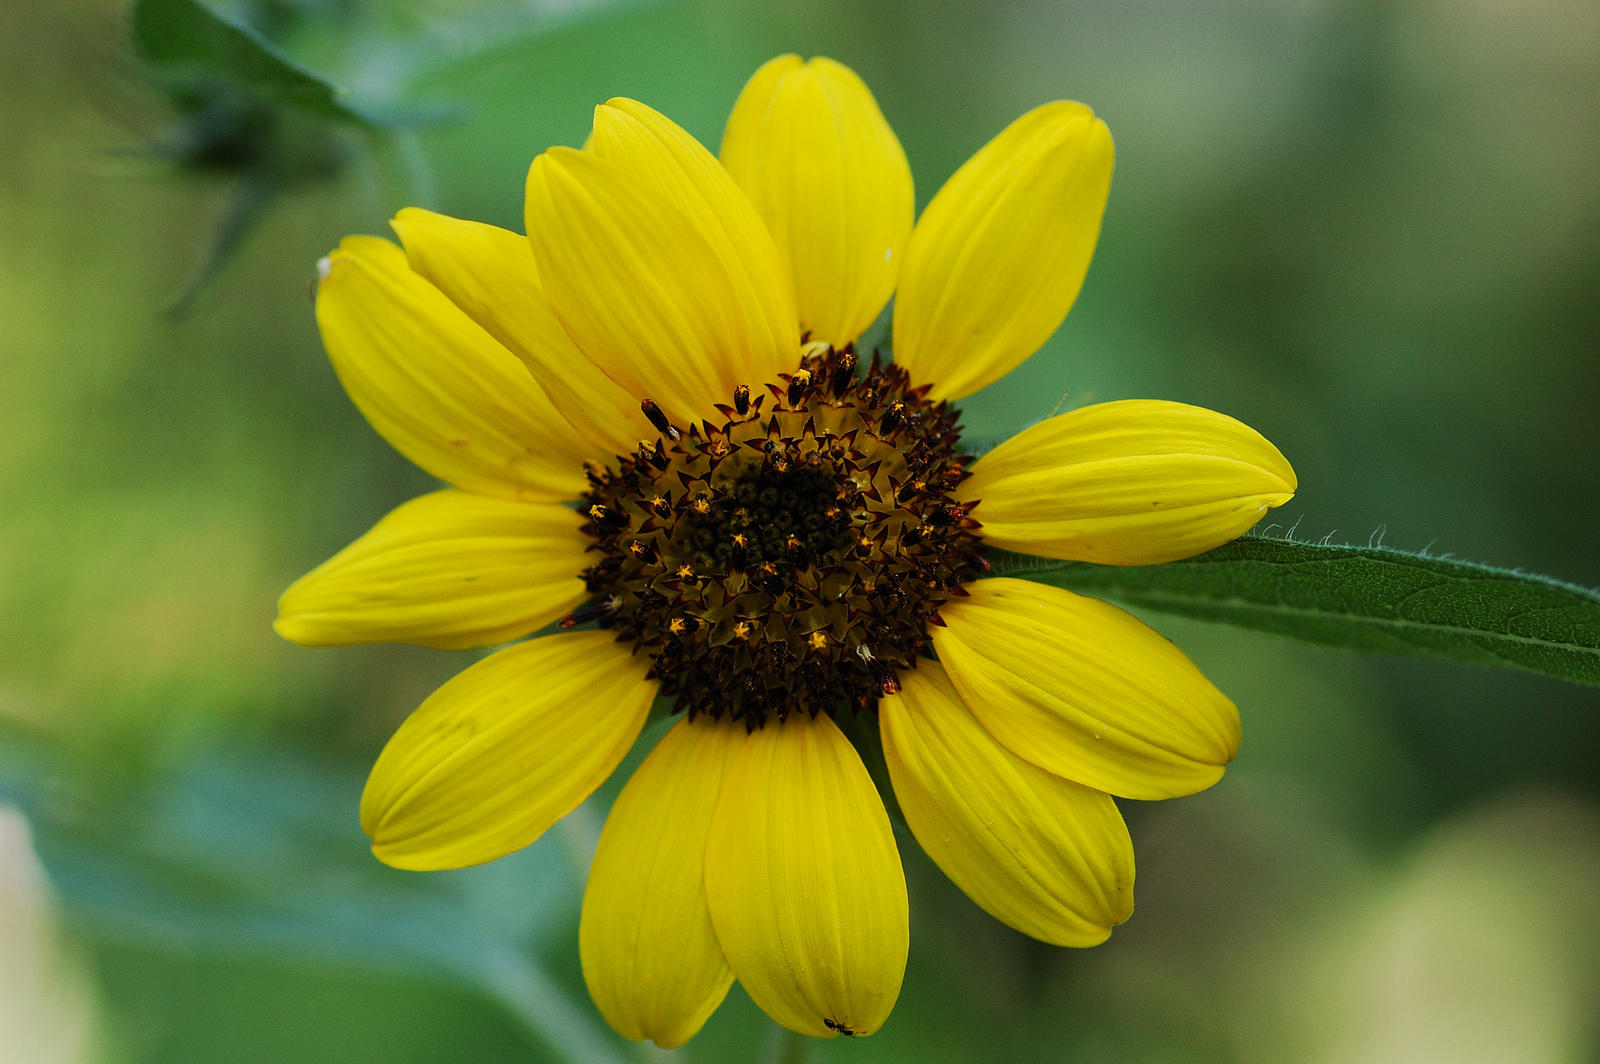 Prickly Sunflower